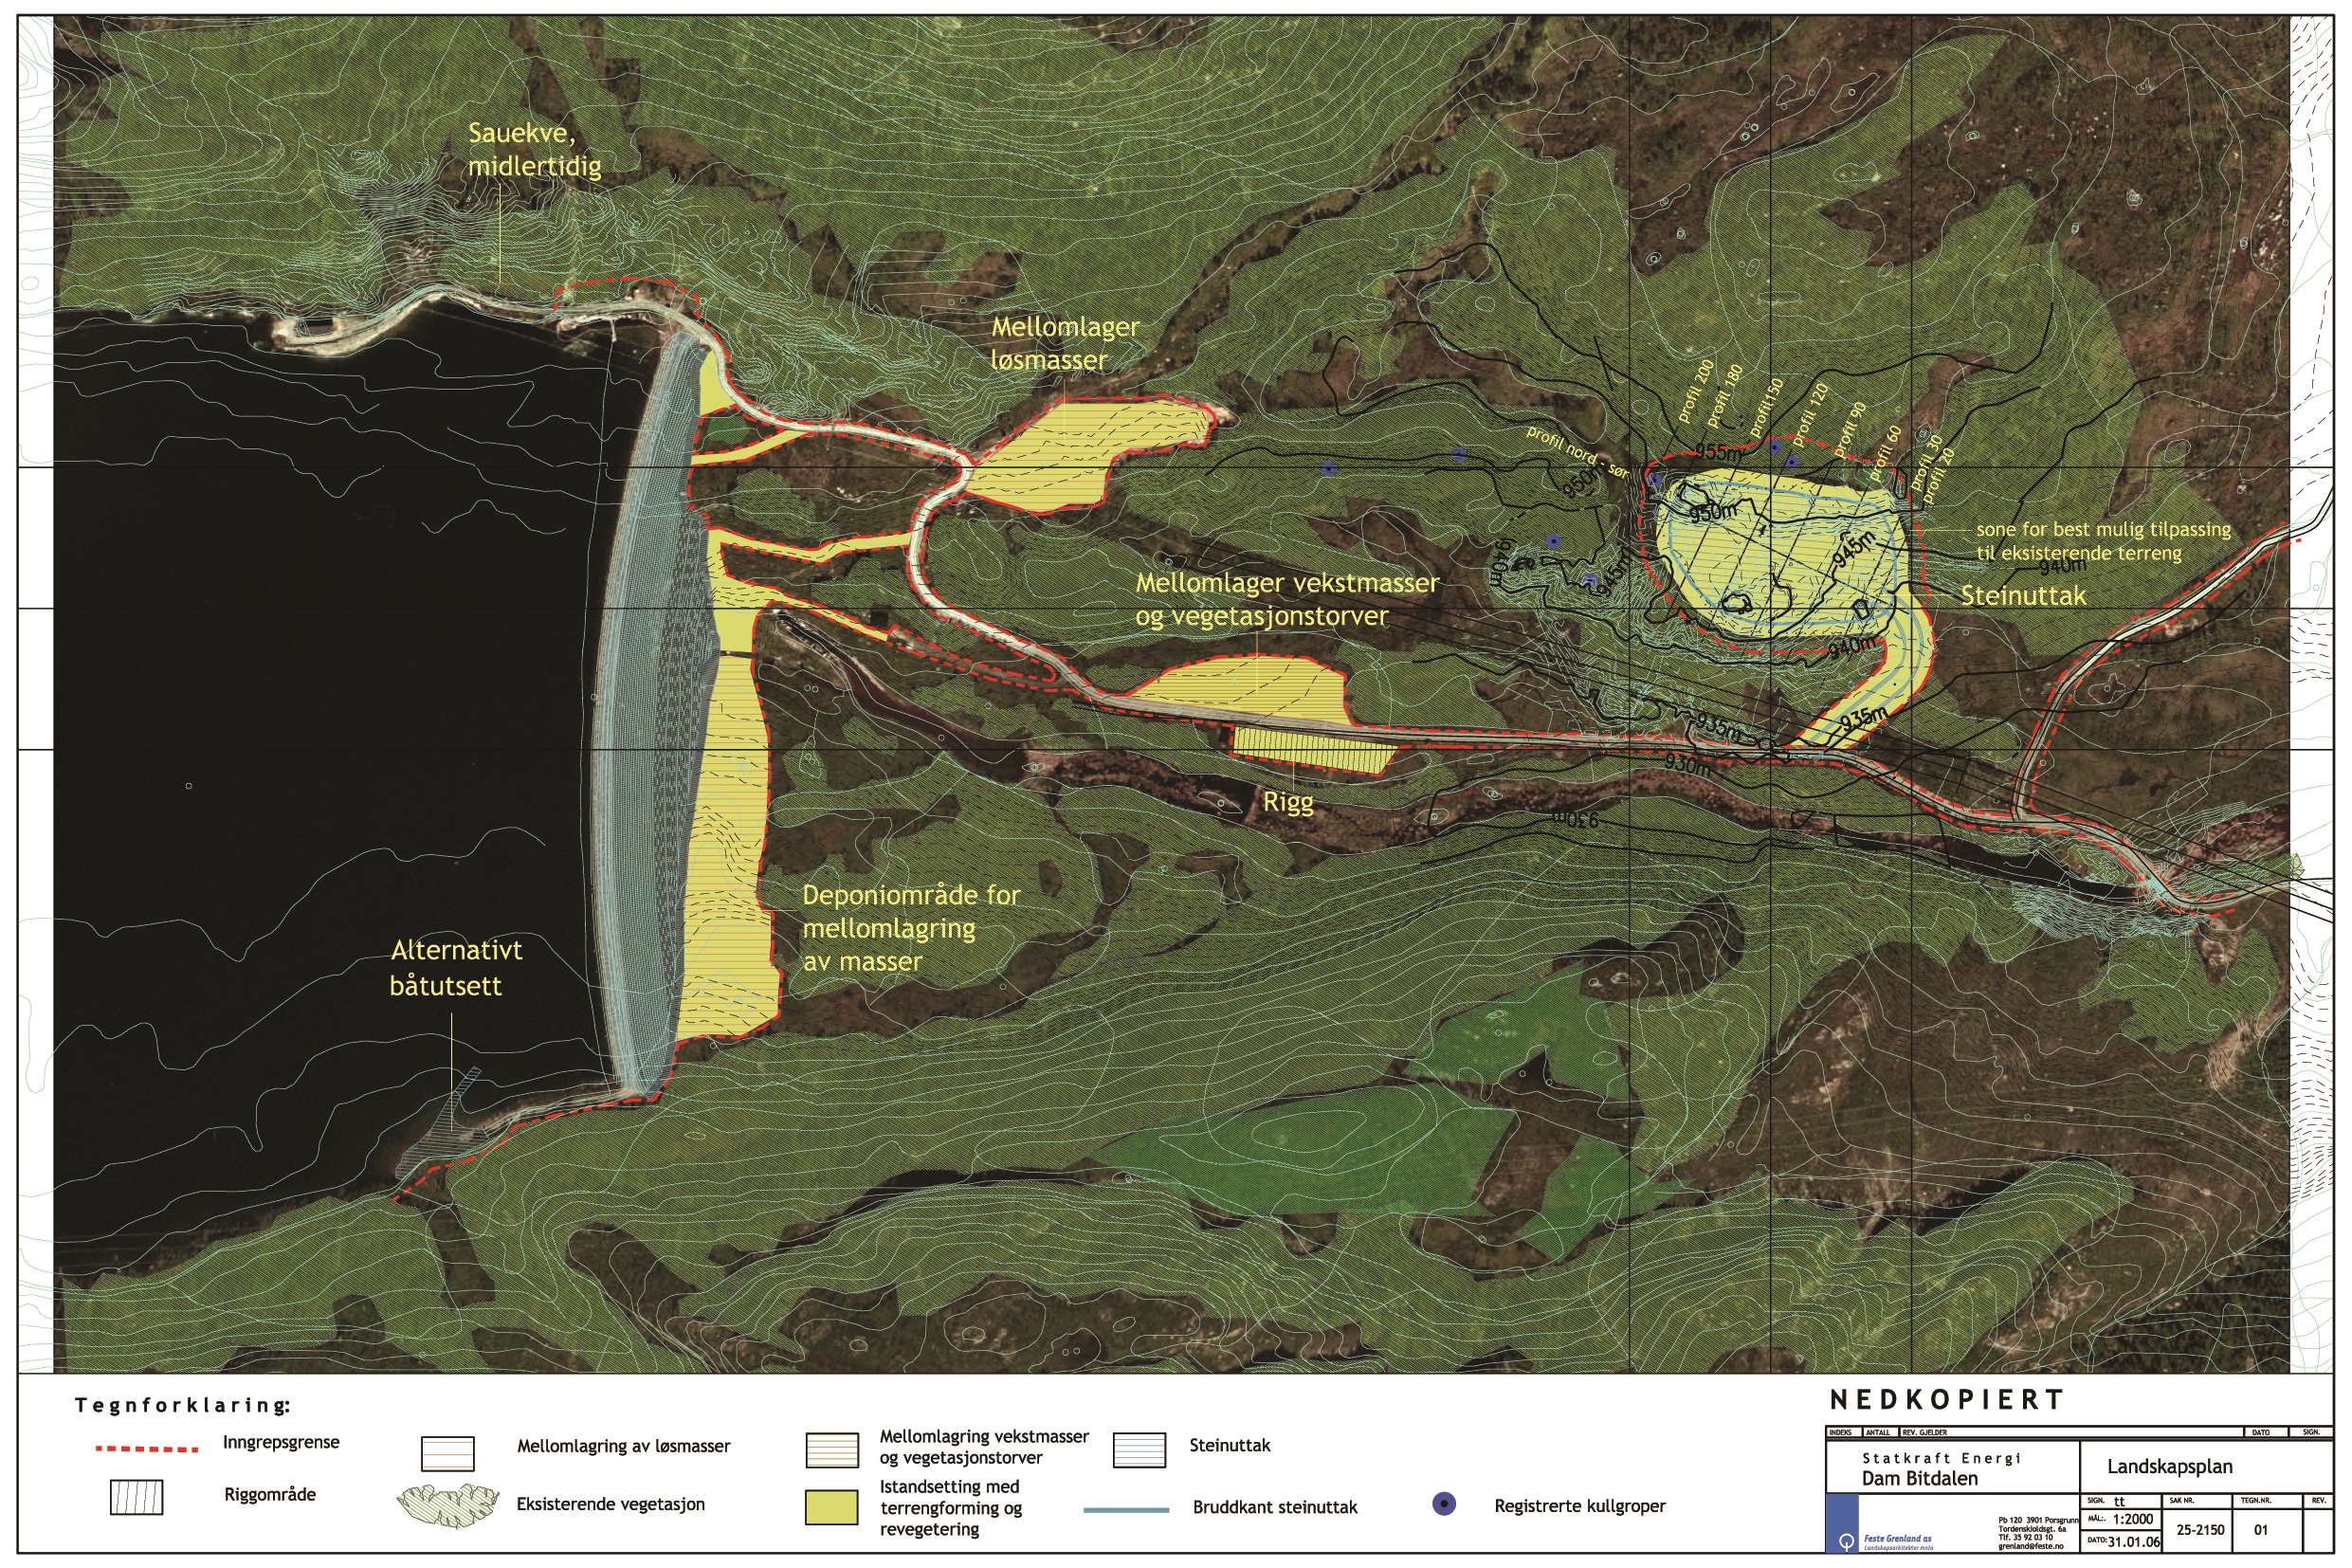   Landskapsplan for Dam Bitdalen  